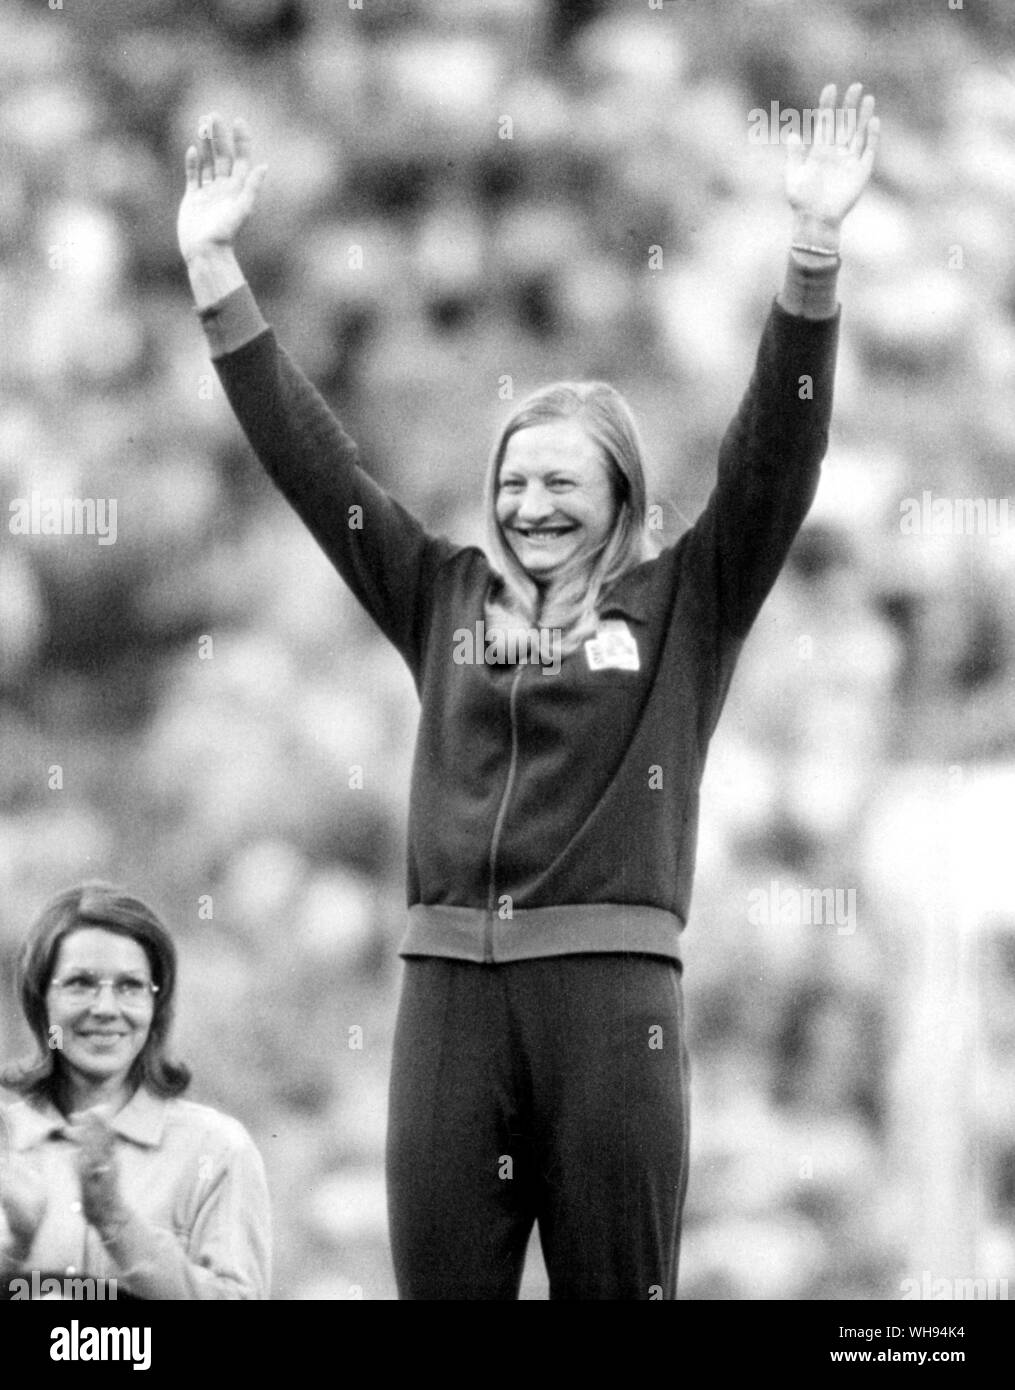 Settembre 1972: Olimpiadi di Monaco di Baviera: Maria Peters (Gran Bretagna) vince la medaglia d'oro nel femminile pentathlon. Foto Stock